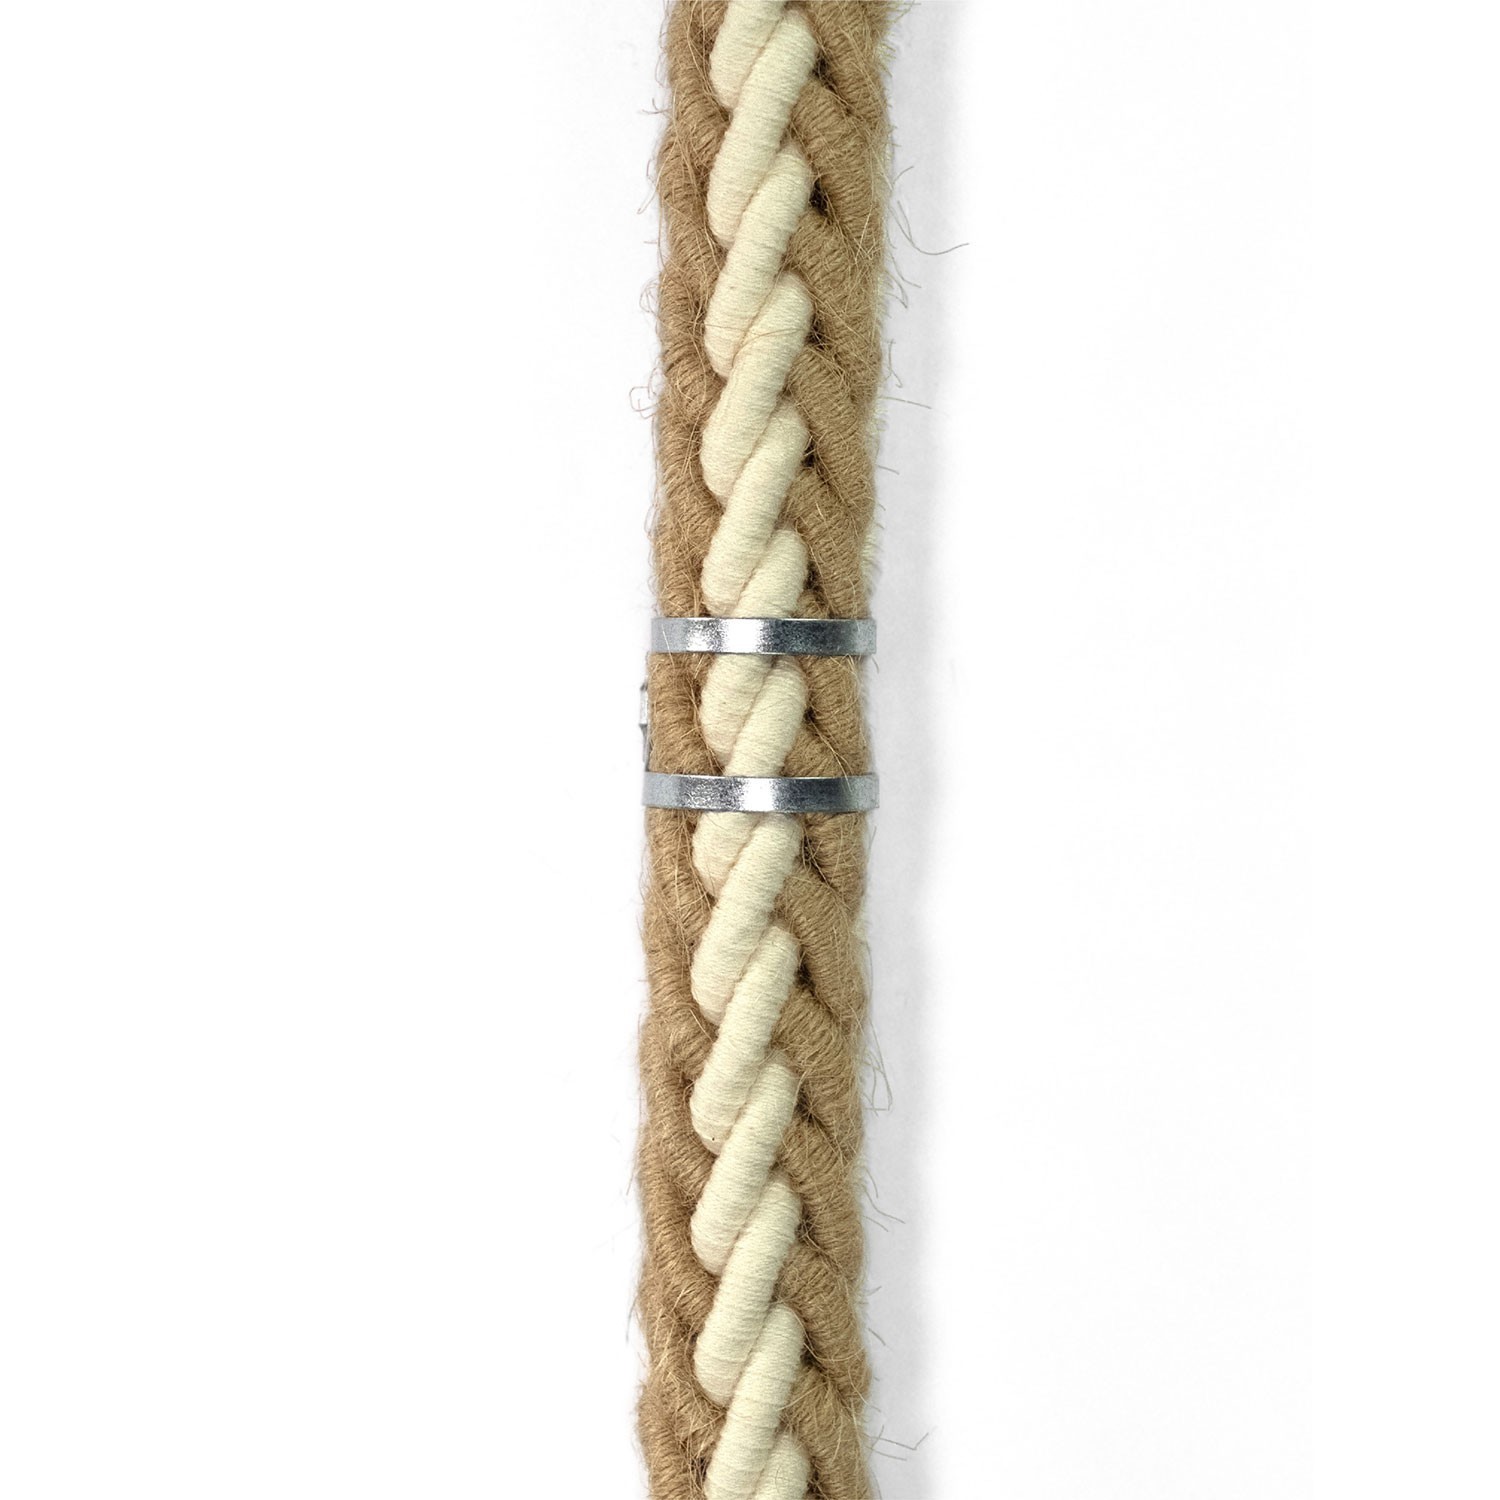 Metalen kabelbinderclip voor touwen met een diameter van 24 mm